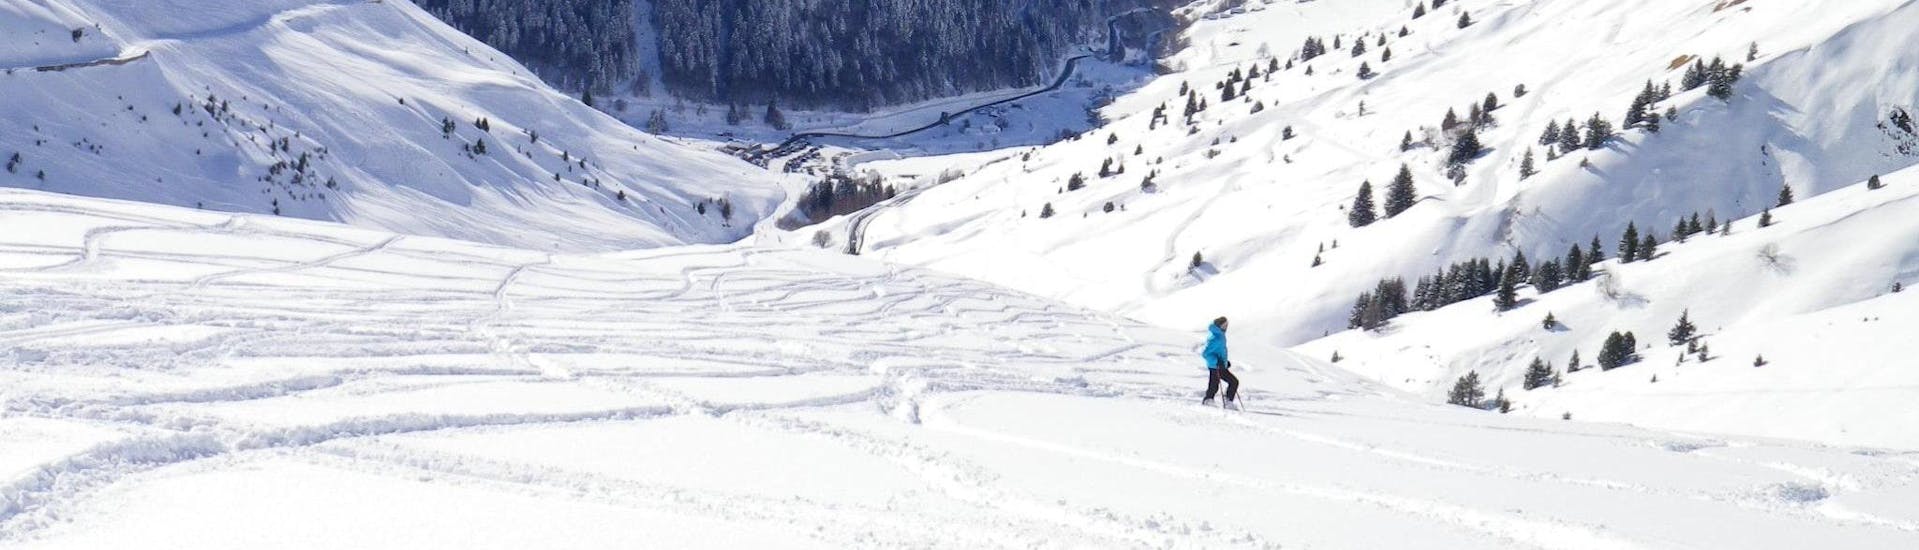 Un moniteur de ski de l'école de ski ESI Ecoloski Barèges se tient au milieu du magnifique paysage de montagnes du Grand Tourmalet où se déroulent les Cours de ski pour Adultes - Tous niveaux.